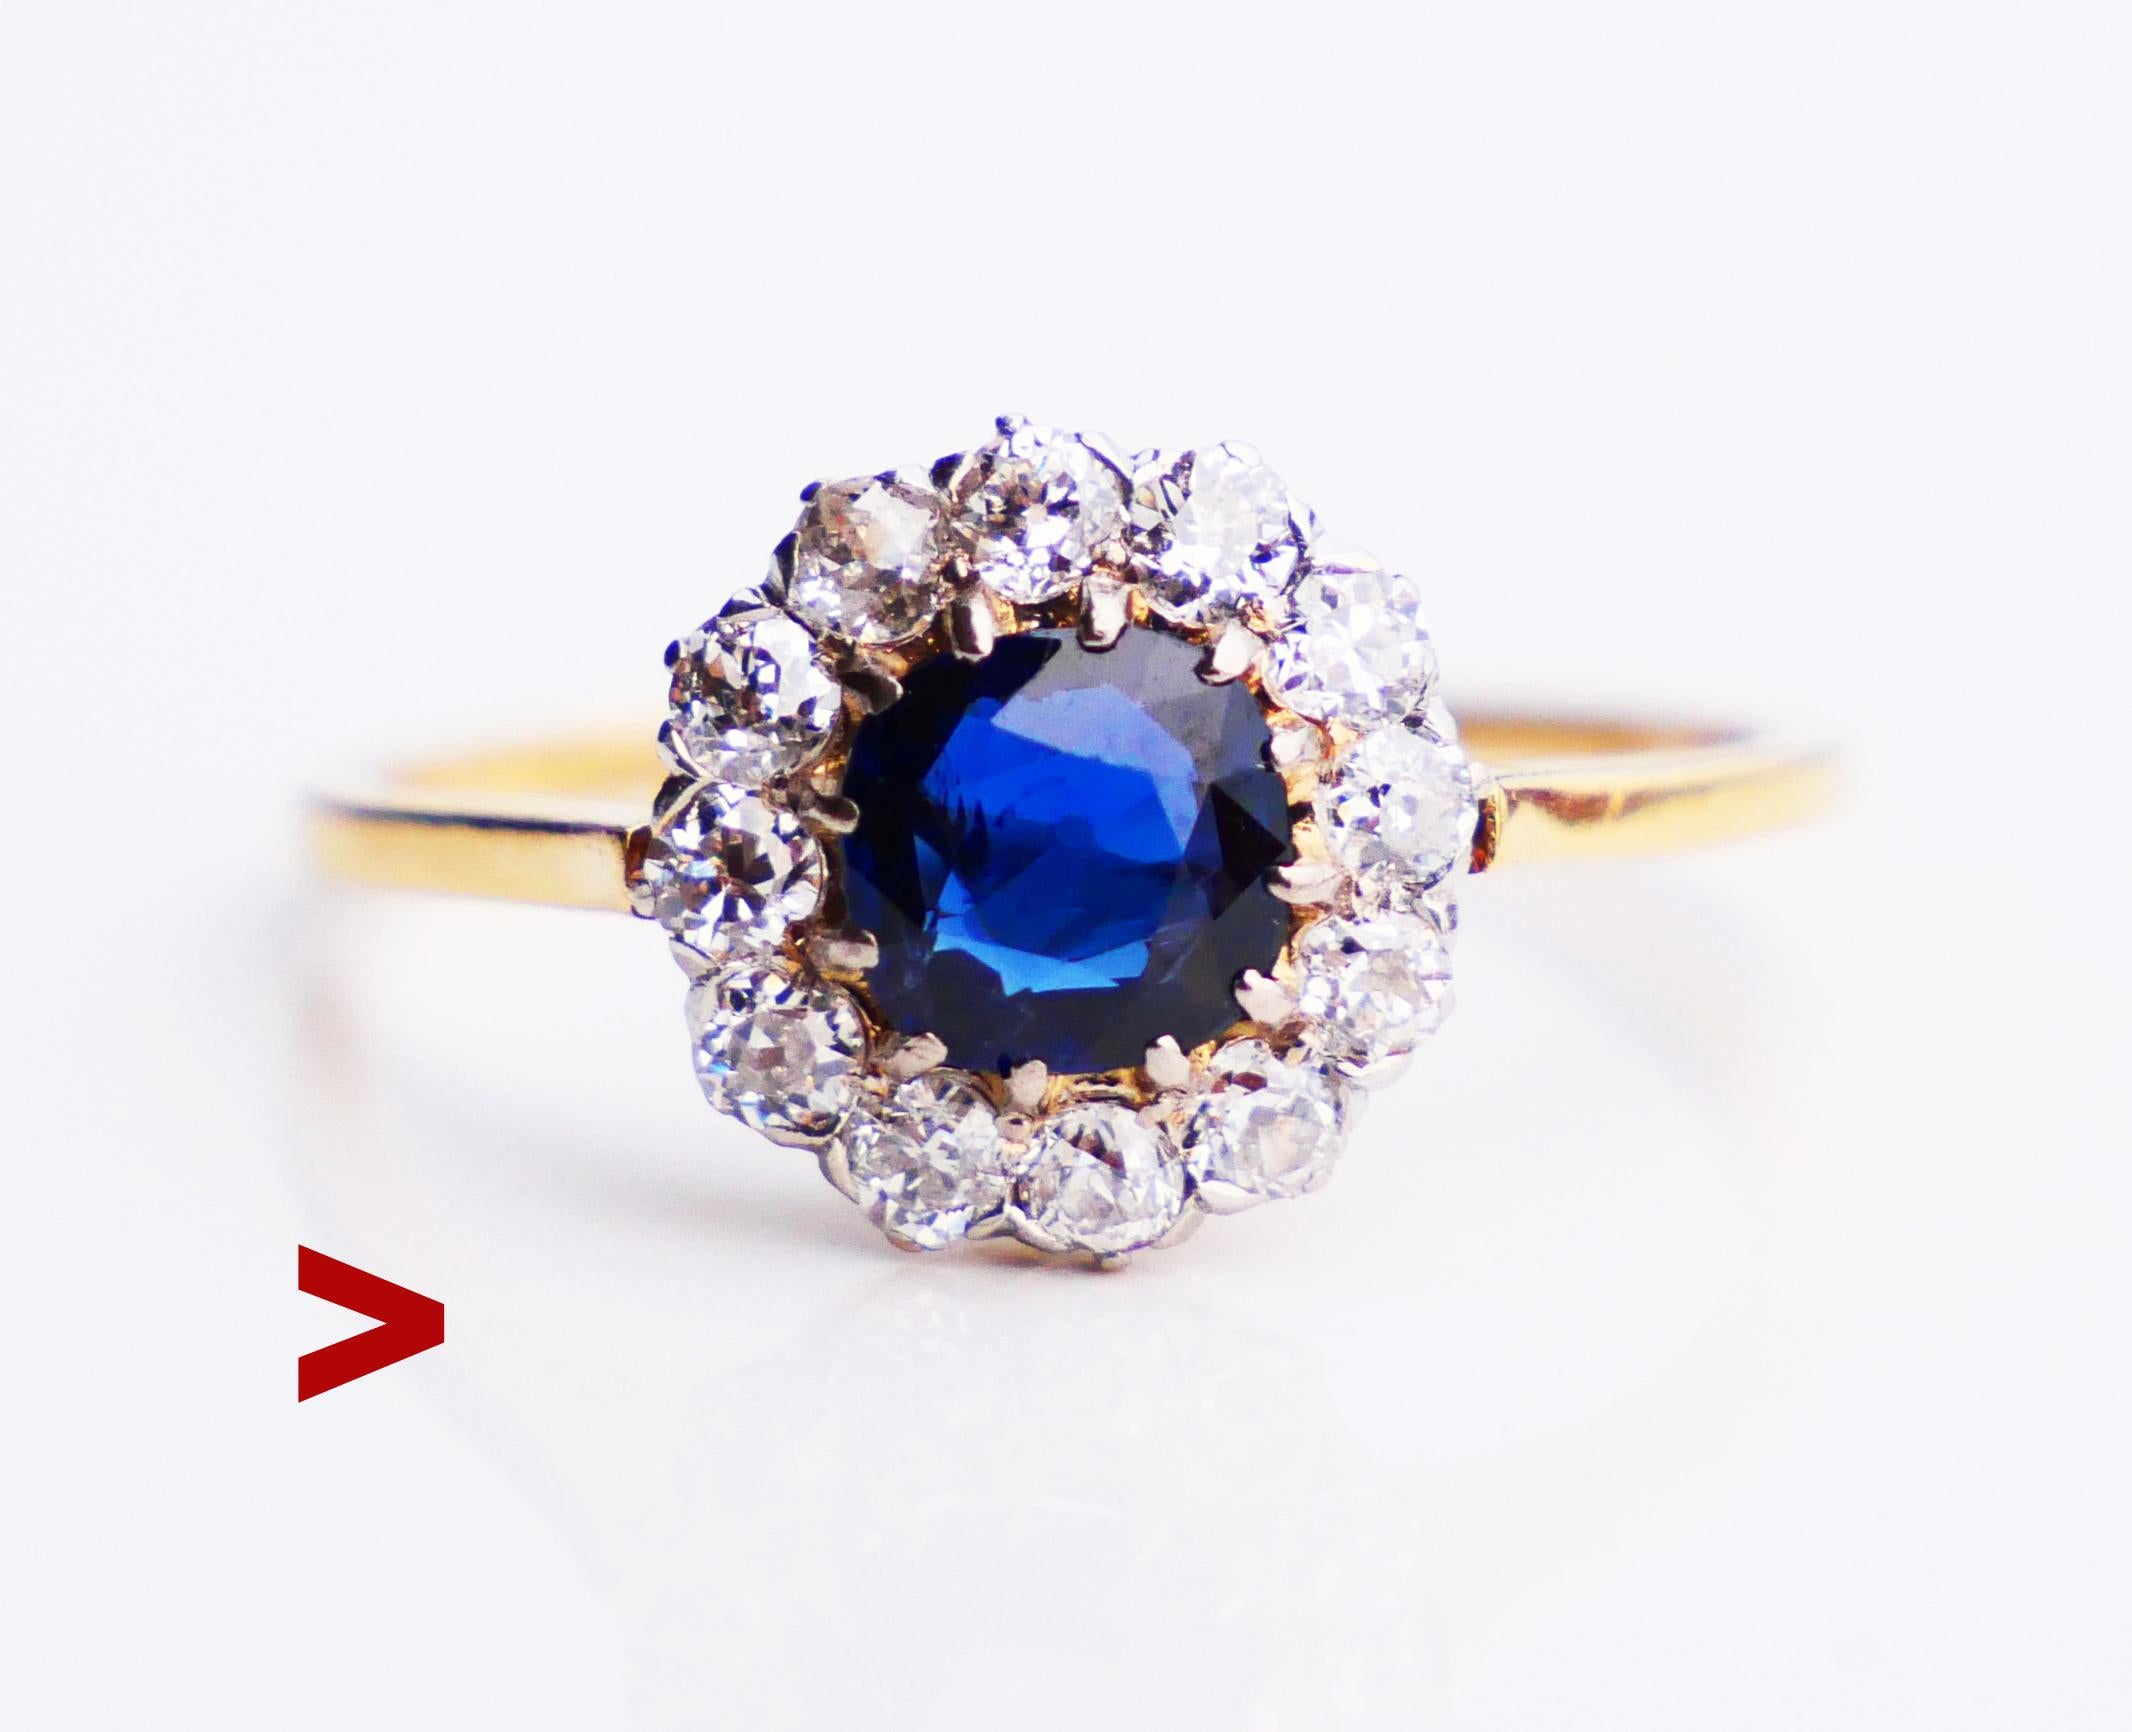 Bague Halo nordique en or jaune 18 carats avec saphir bleu naturel et 12 diamants de taille européenne dans une monture en platine. Poinçonné 18K, anneau suédois. Pas de marque d'année, fabriqué vers les années 1920-1930. 1920-1930. J'ai plusieurs